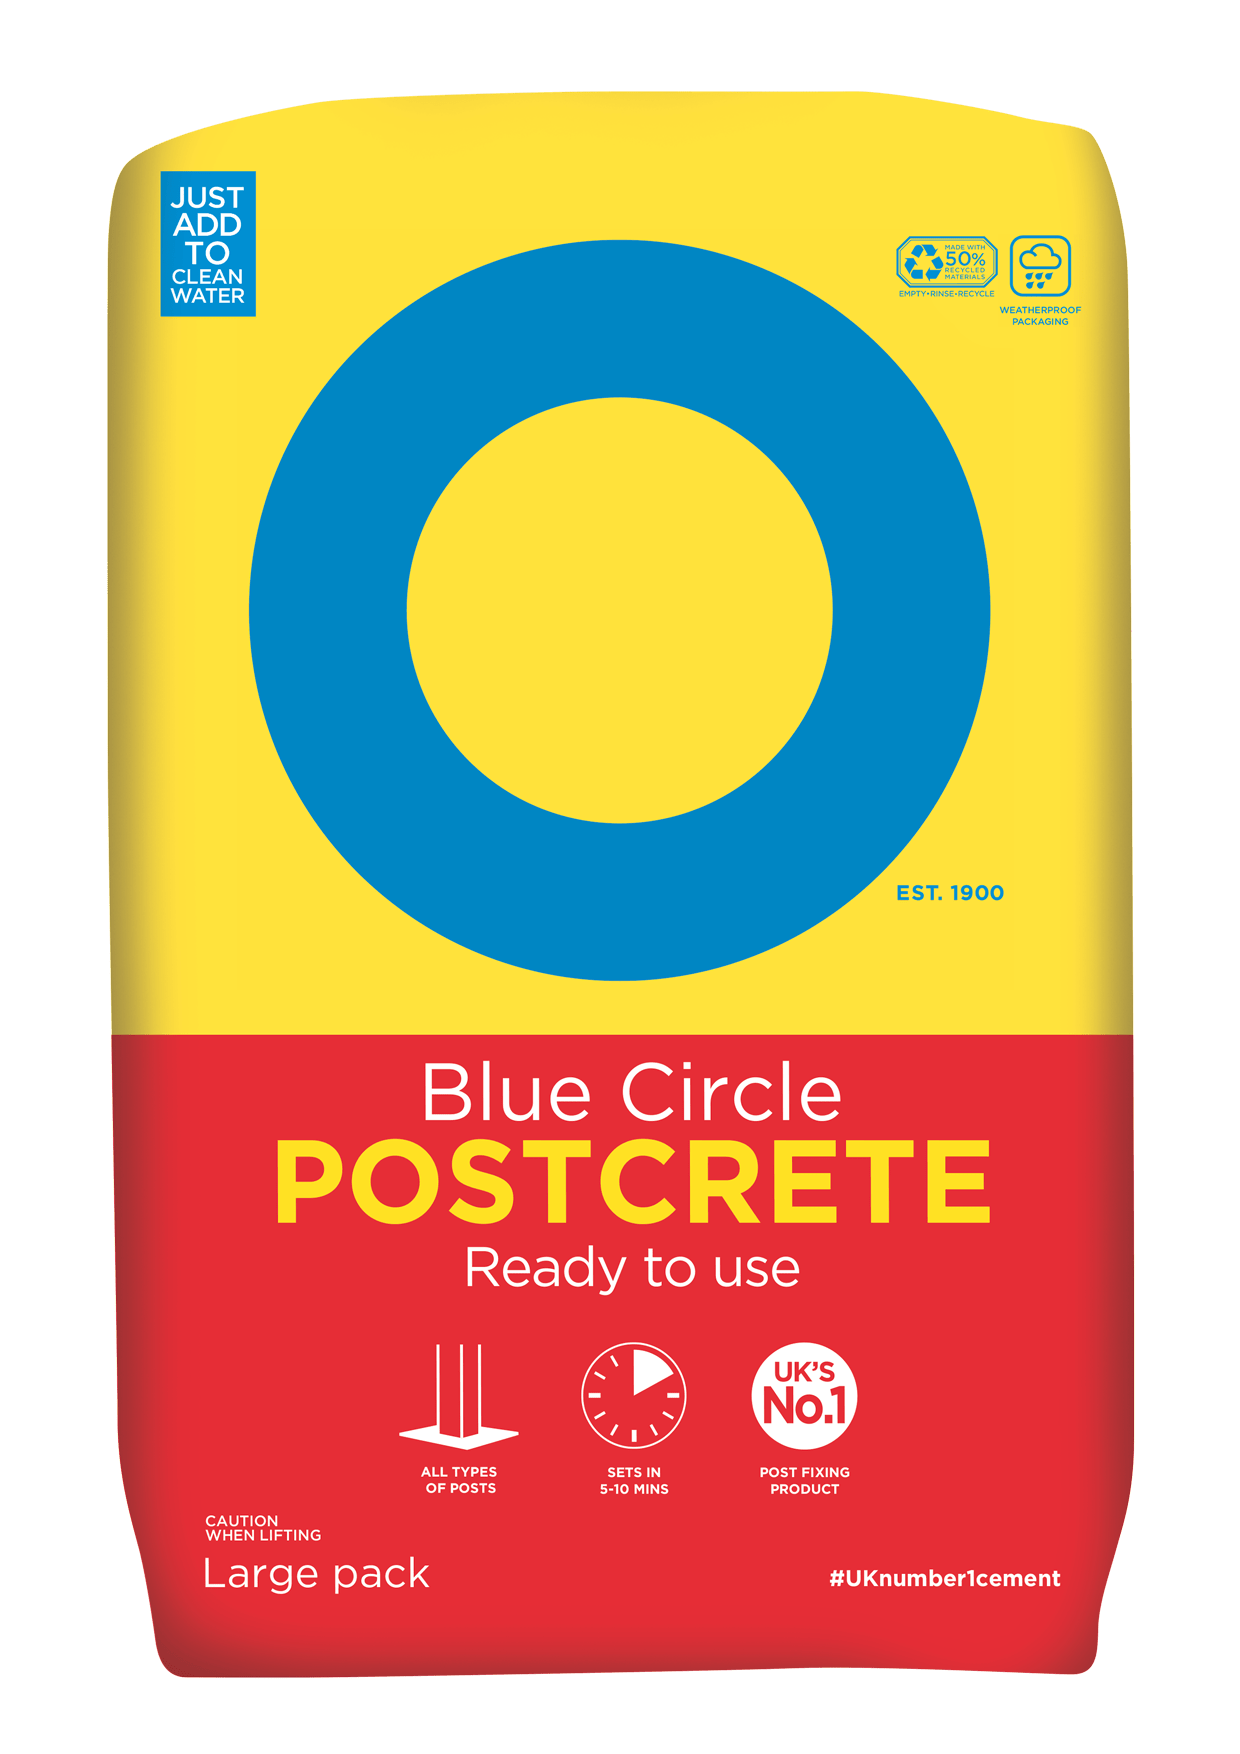  POSTCRETE - THE EASY ONE